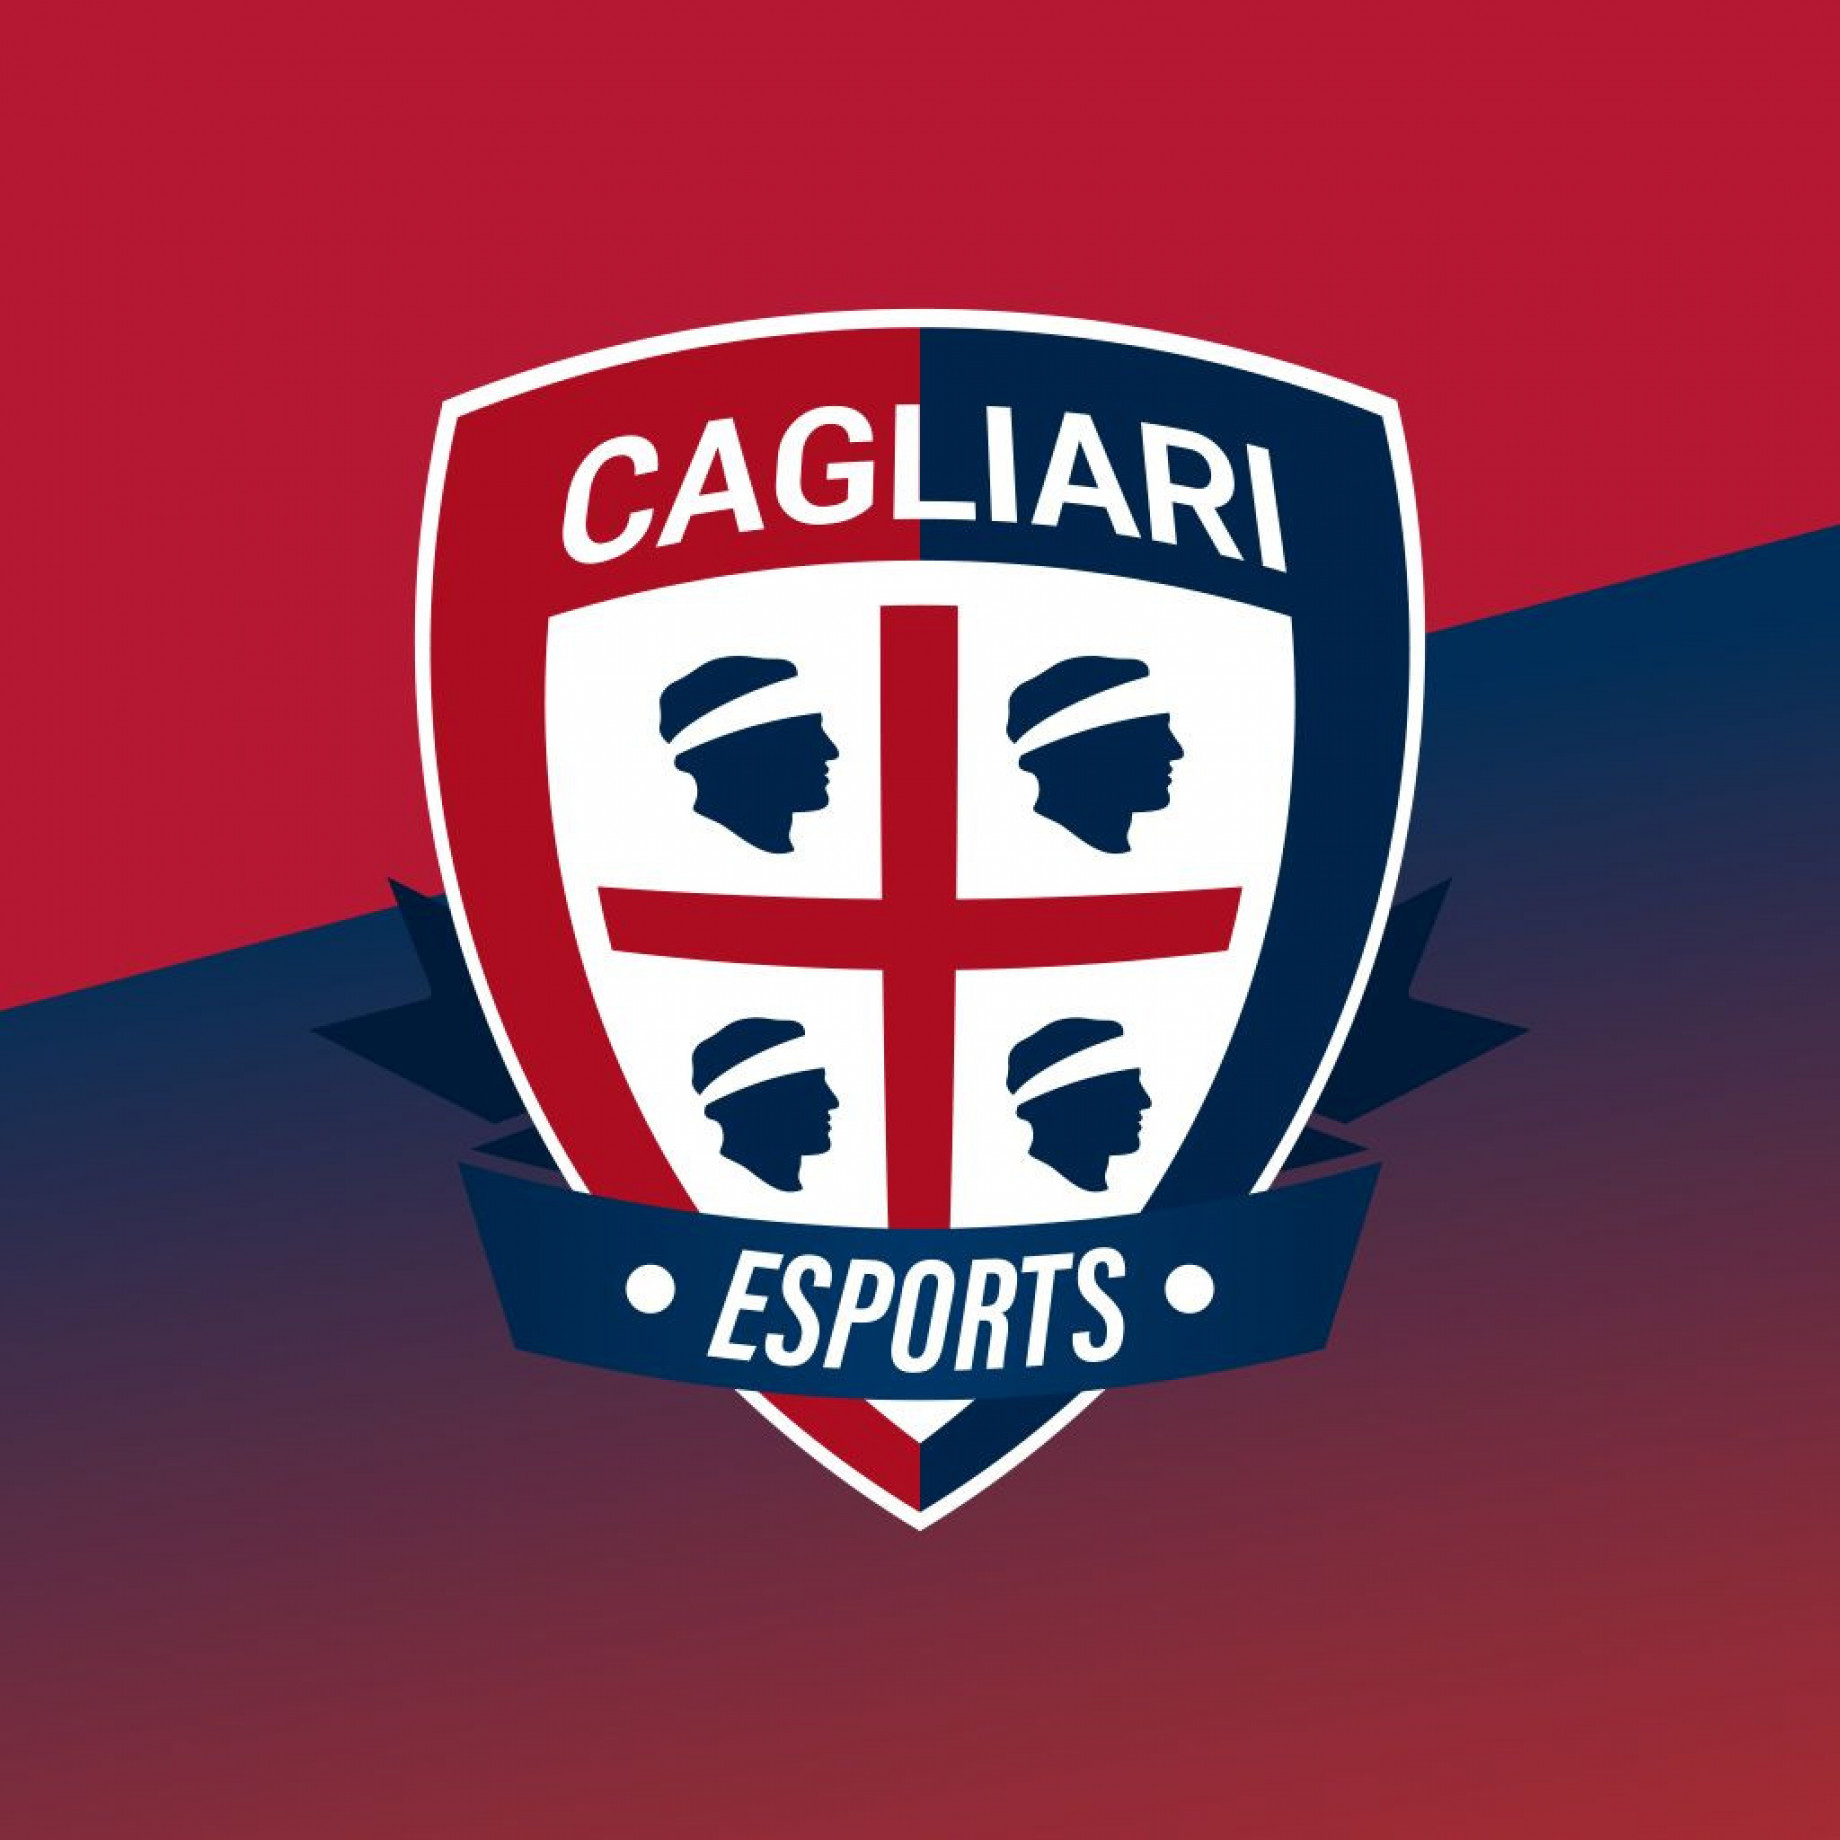 Cagliari_Esports.jpeg